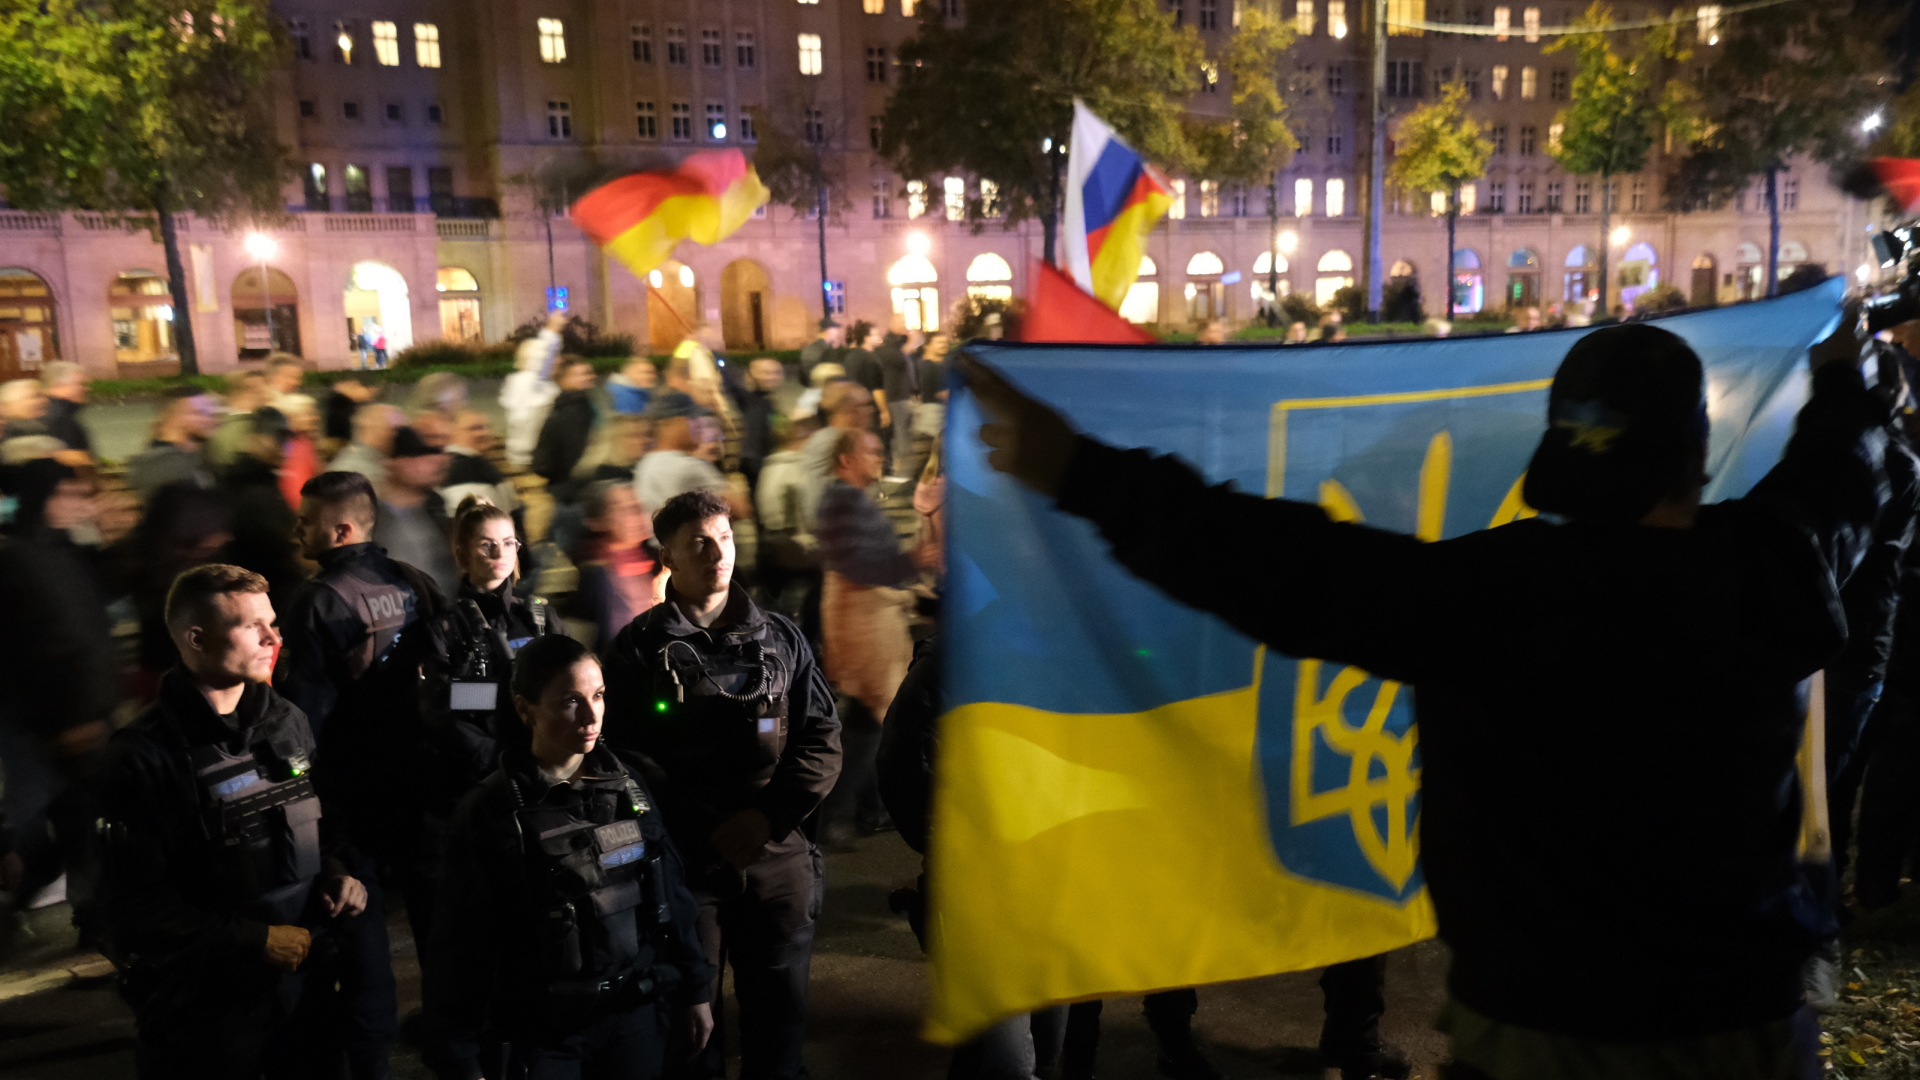 Teilnehmer einer Demonstration protestieren in Leipzig gegen die Russland-Politik der Bundesregierung, während ein Gegendemonstrant im Vordergrund eine ukrainische Fahne hält. | dpa